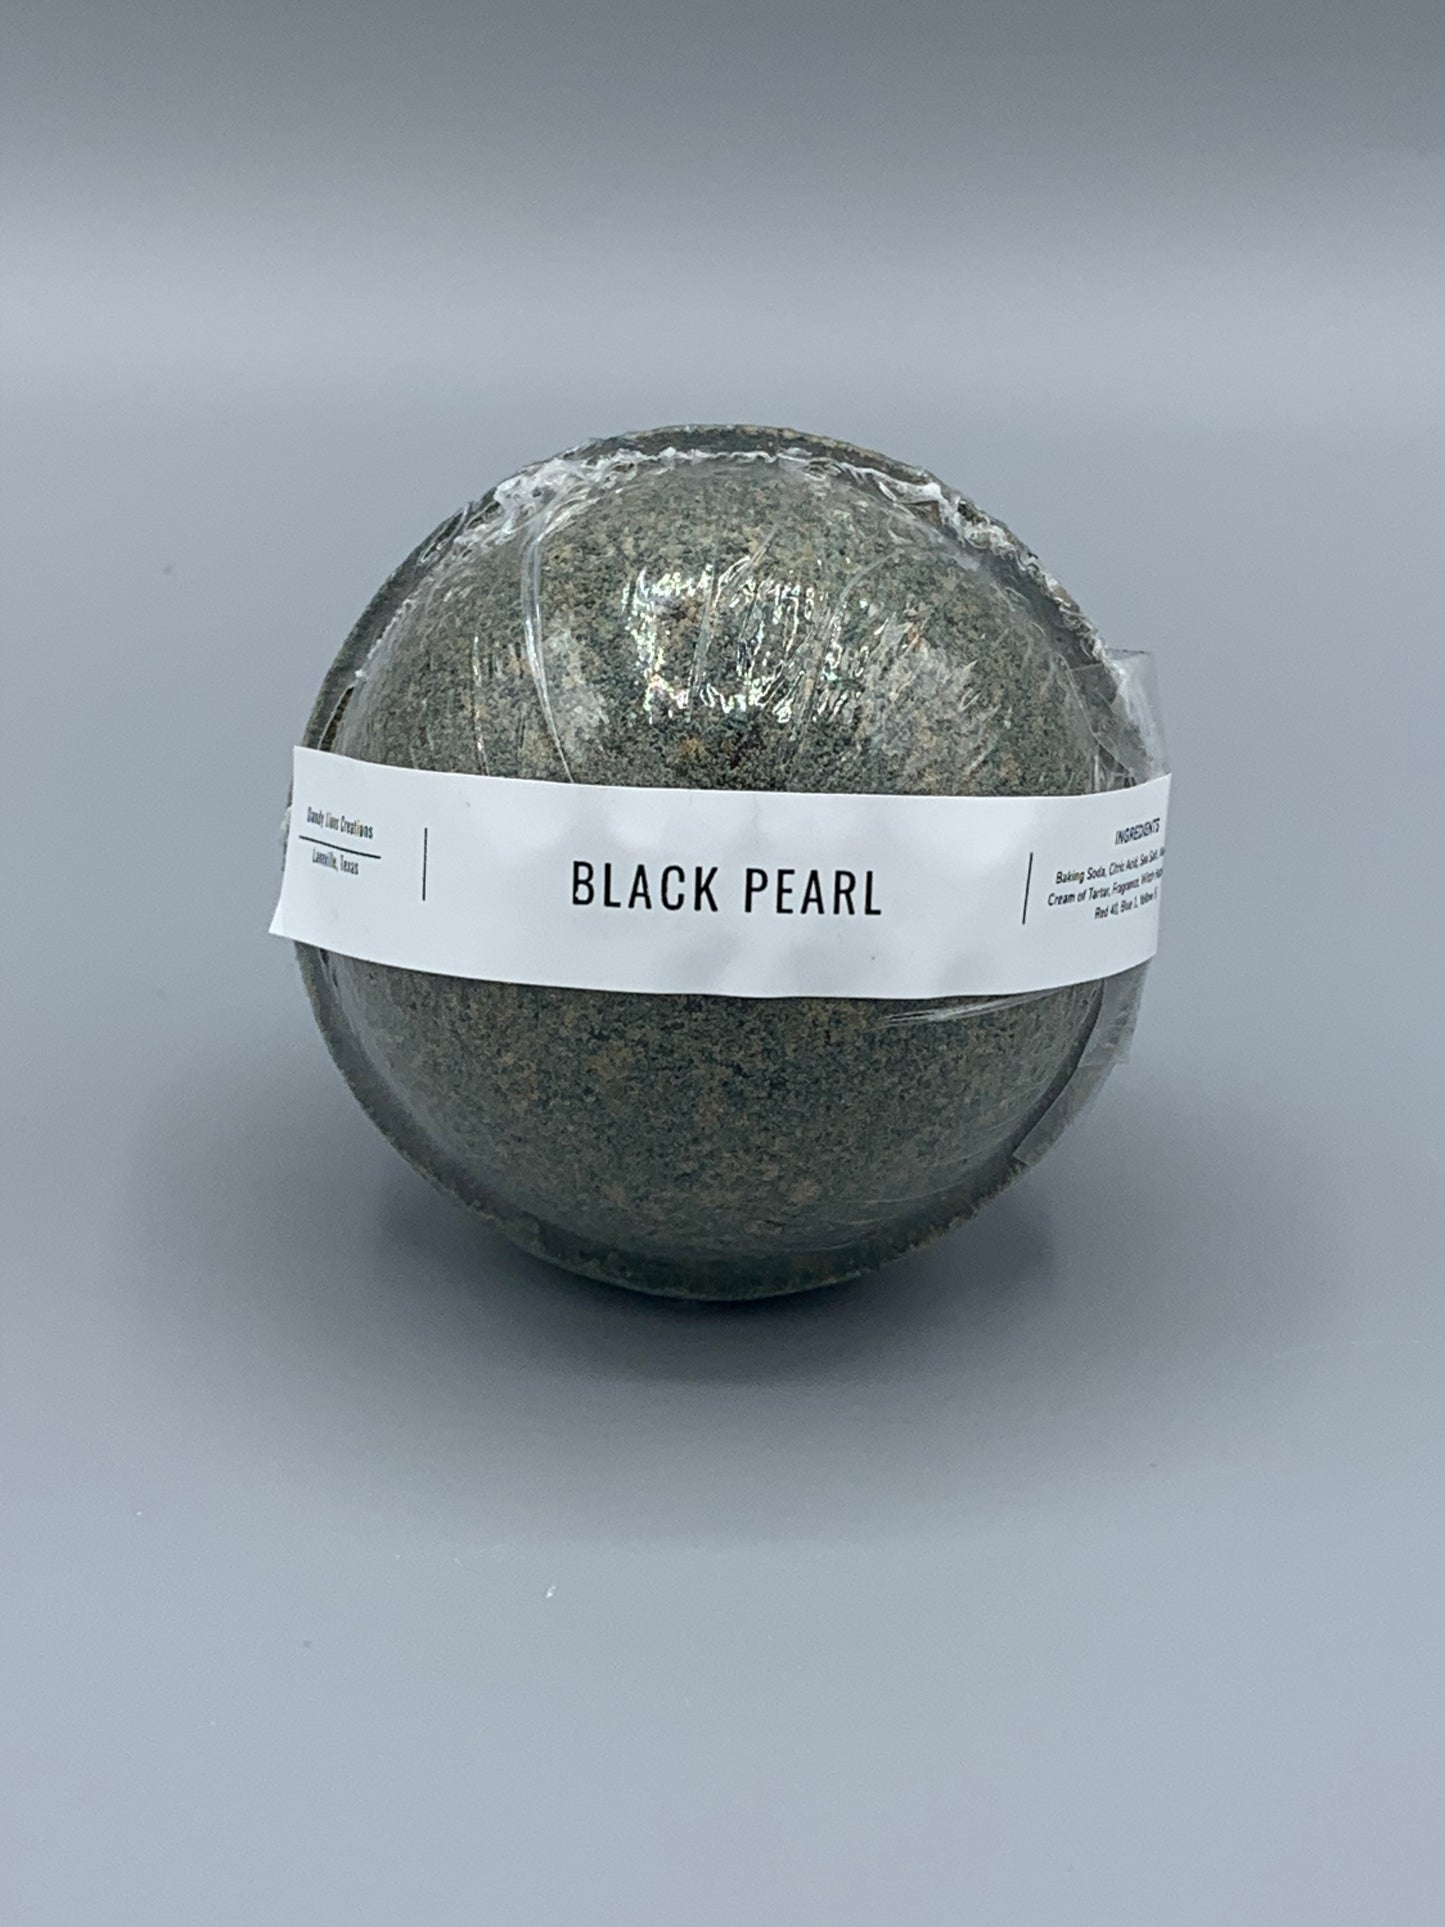 Black Pearl bath bomb